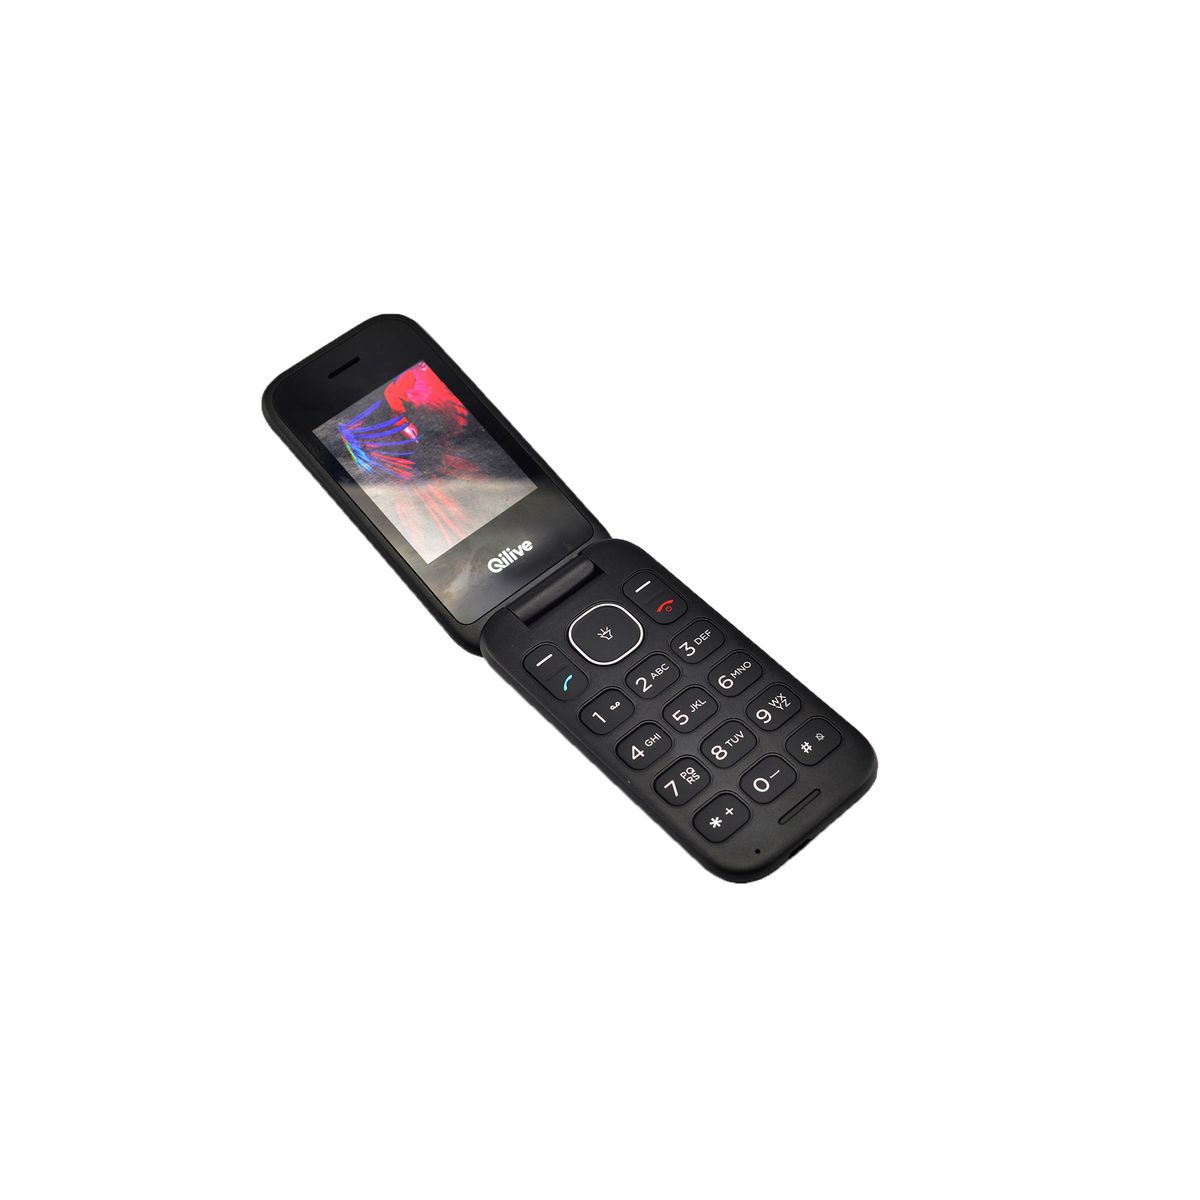 QILIVE Téléphone portable RF901 - Double SIM - A clapet - 2G - Noir